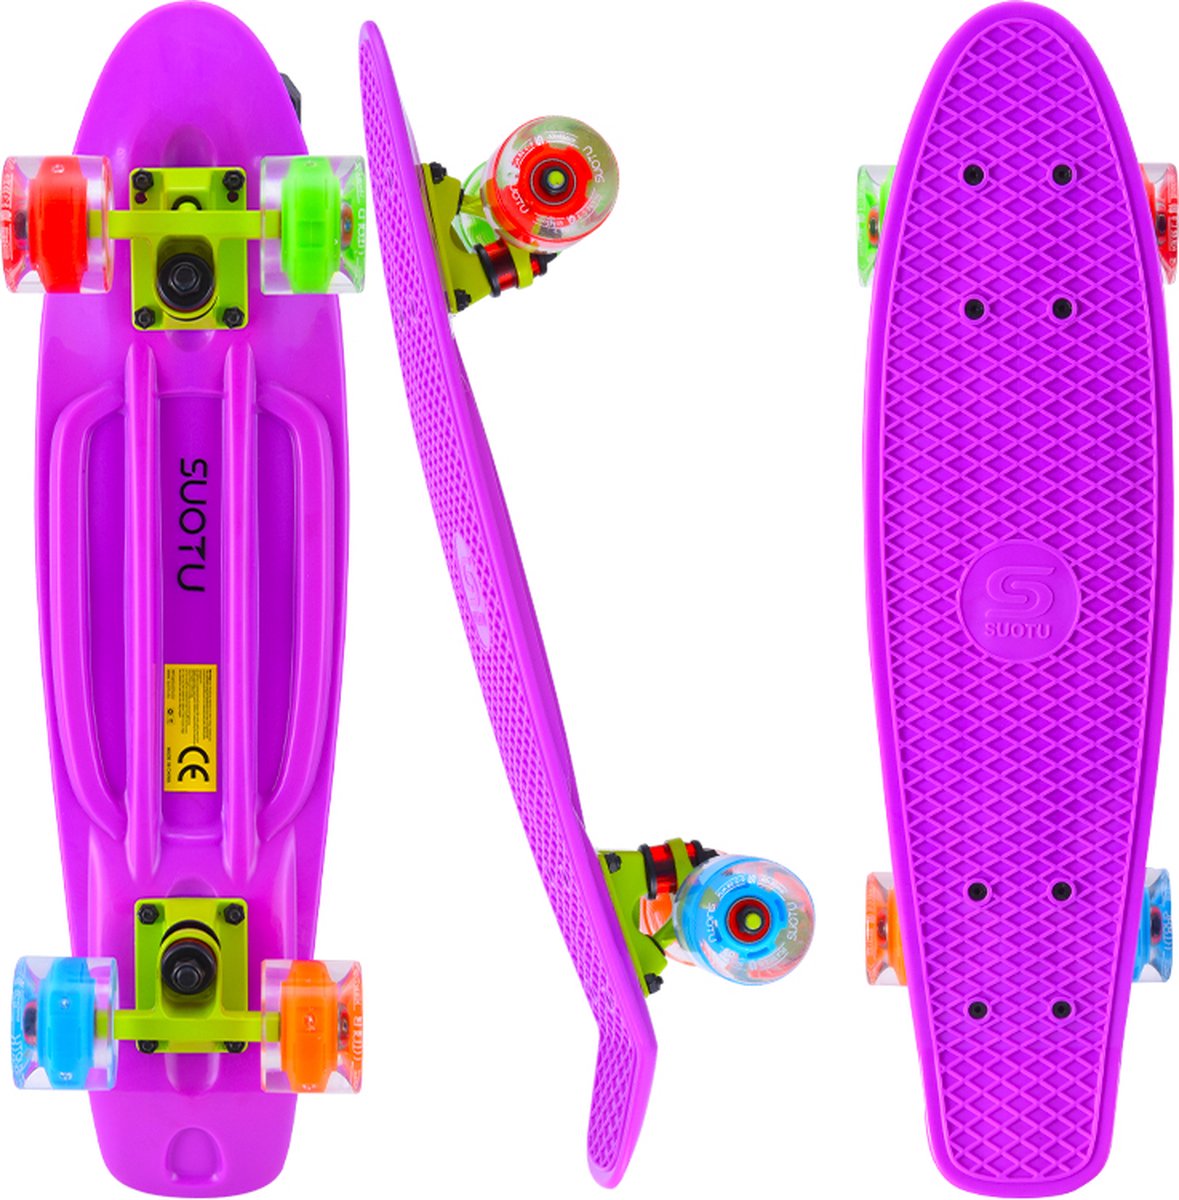 Suotu Skateboard - Skateboard Jongens – Wielen met LED-verlichting - Skateboard Meisjes – Skateboard Volwassenen - Paars